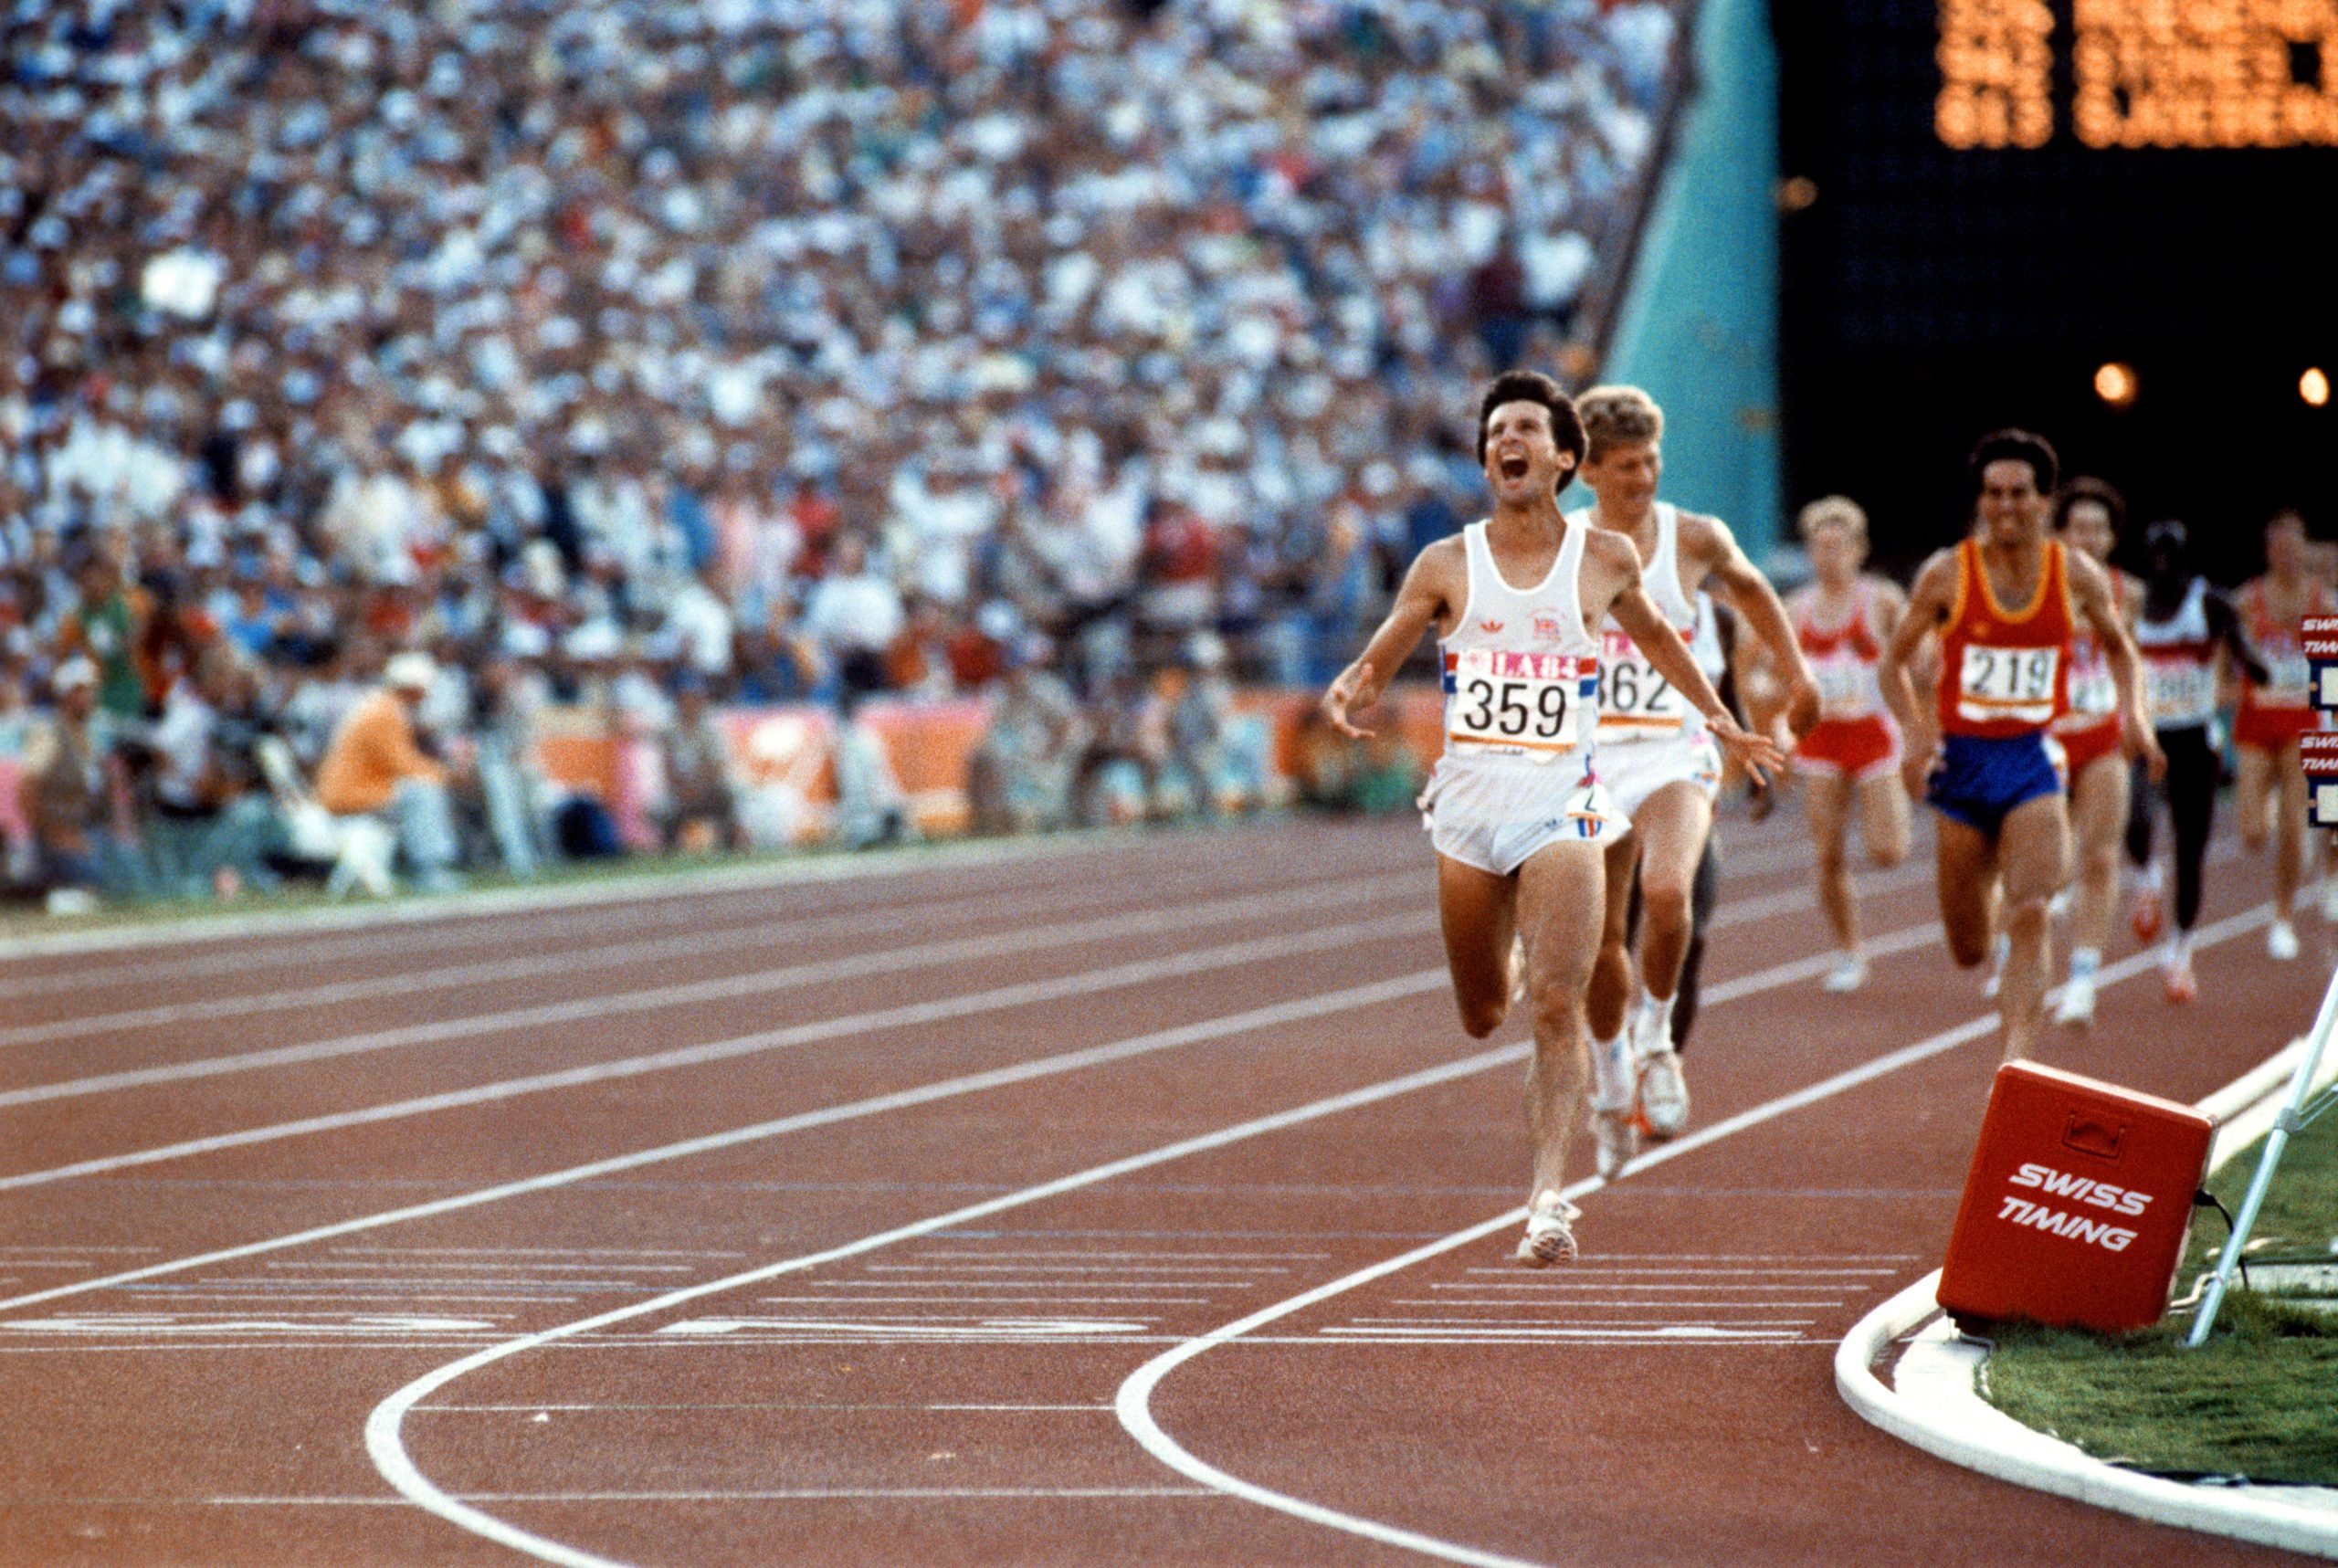 Kerr busca convertirse en el primer hombre británico desde Coe en 1984 en ganar un título olímpico de 1.500 metros